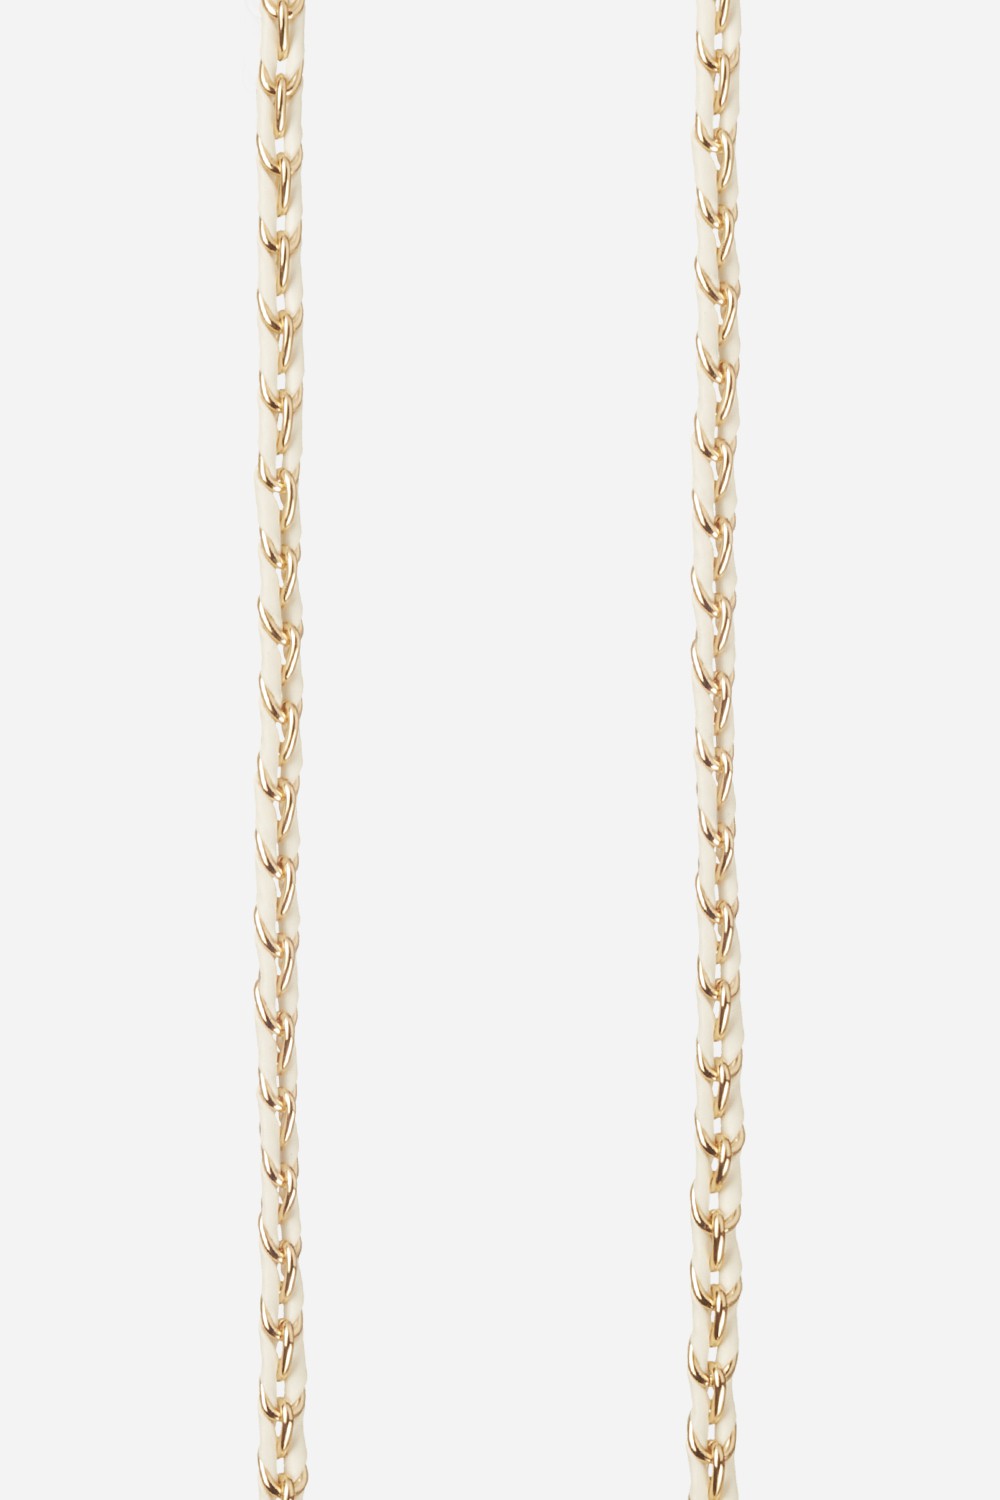 Chaine Longue Lou Blanc 120 cm